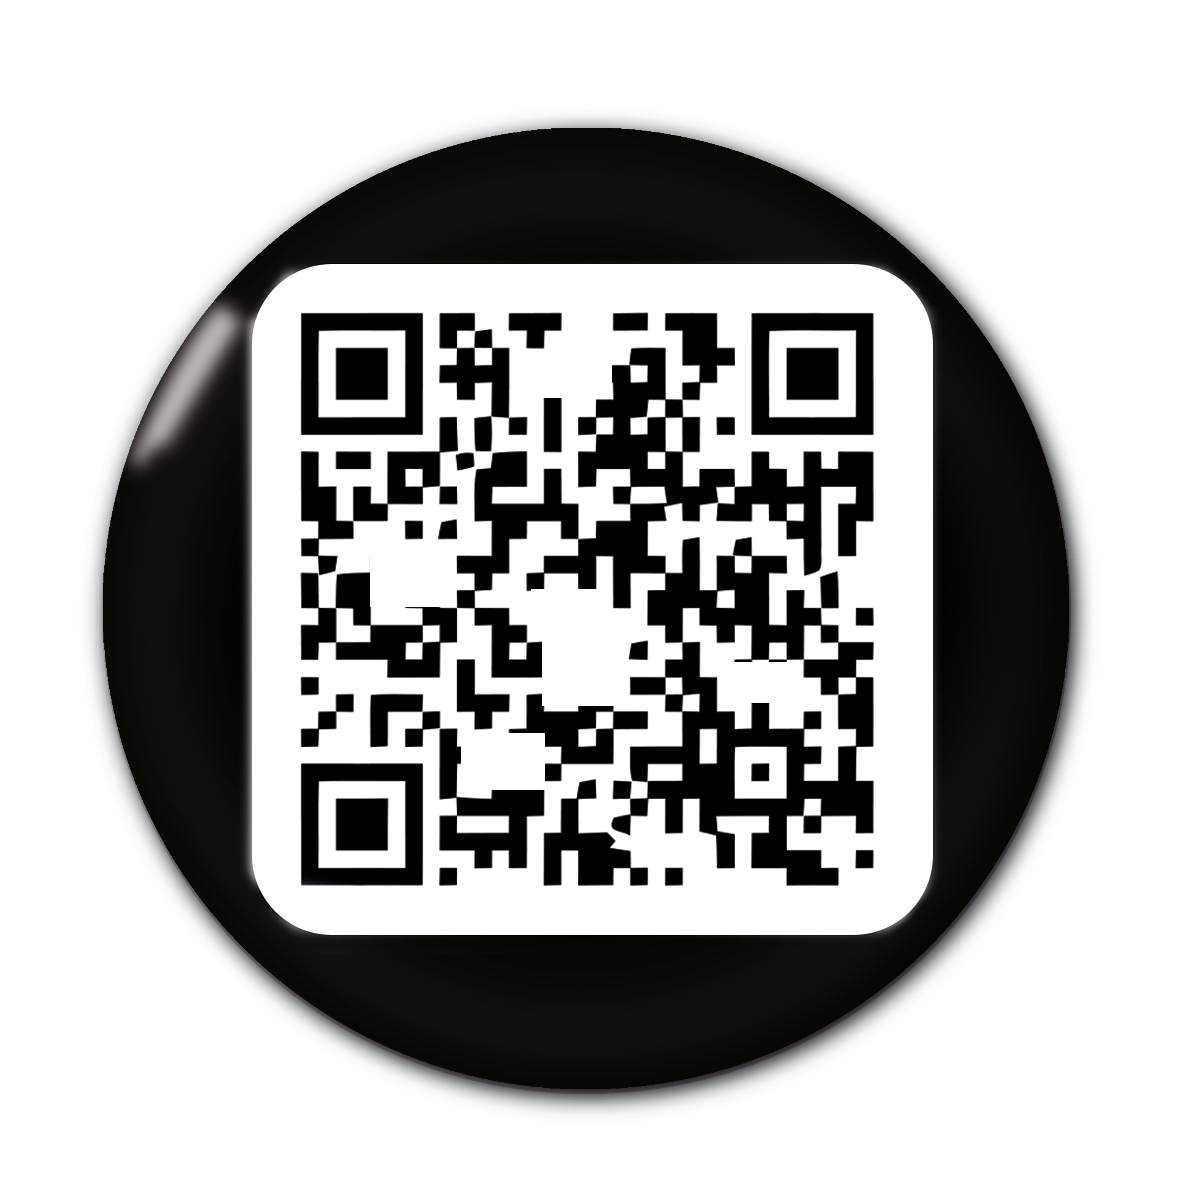 NFC Visite card - Black button - Digital business card - NFC - QR code